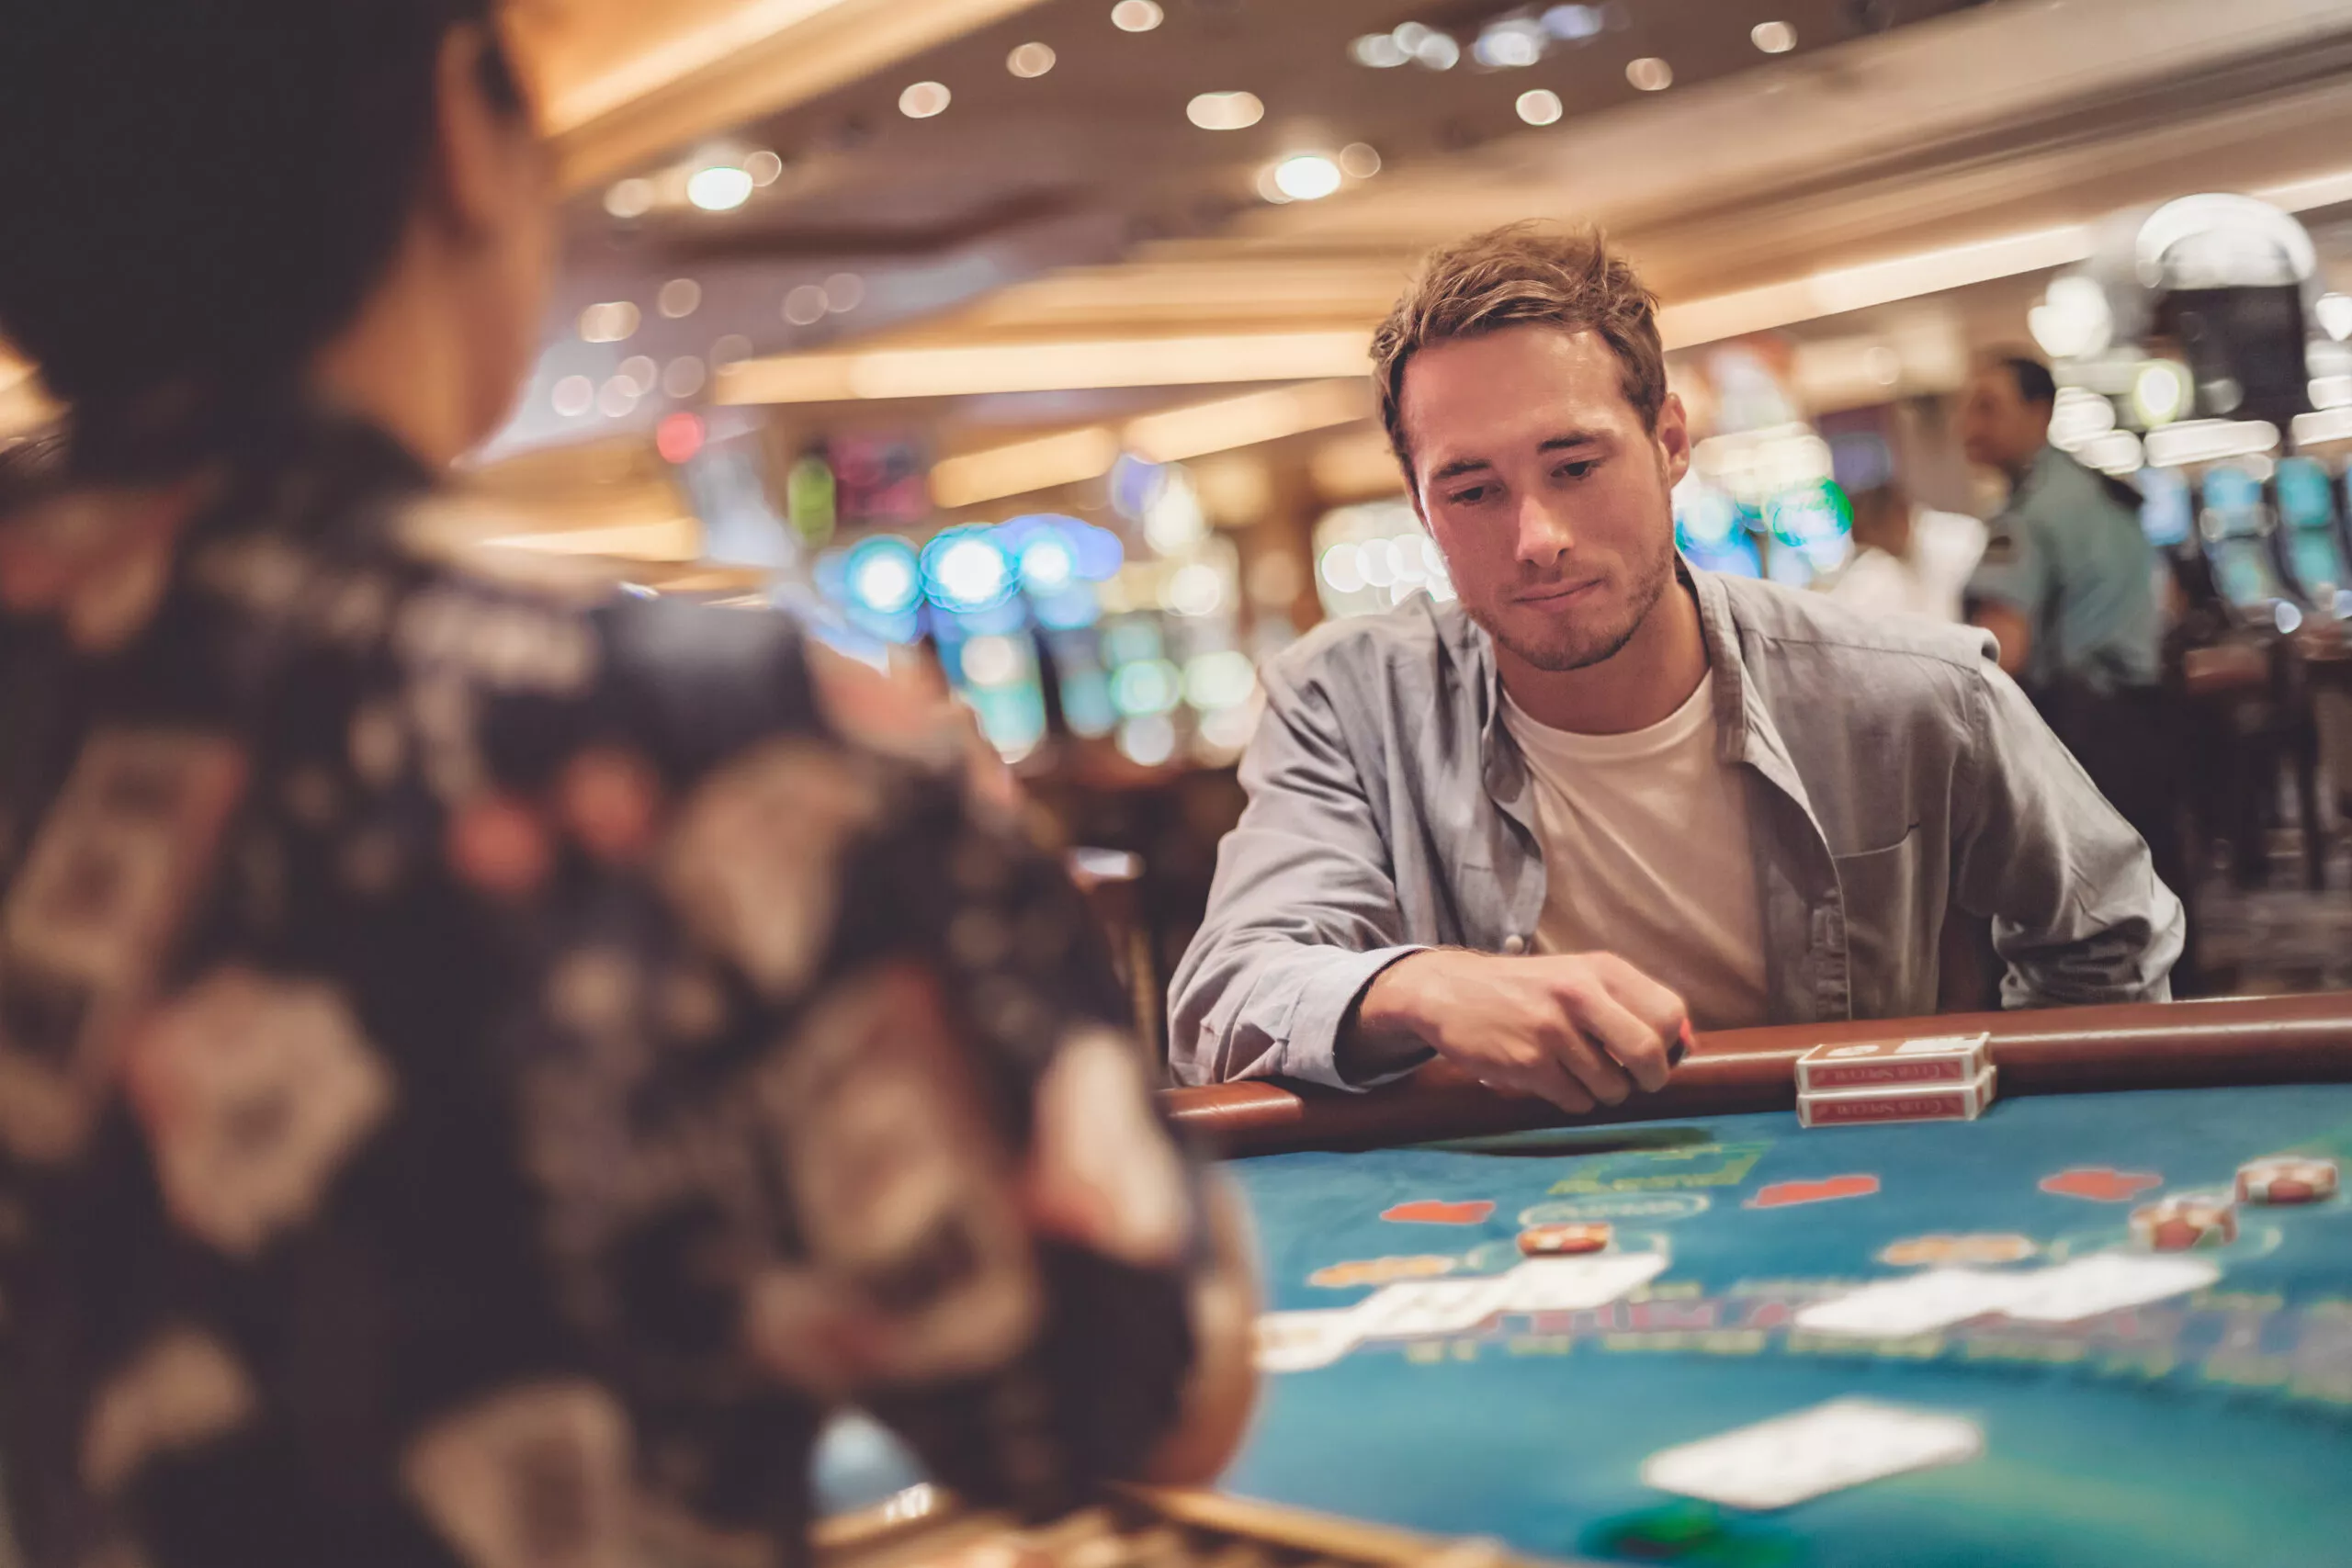 Азартный молодой человек играет в блэкджек за столом с картами и фишками. Портрет азартного игрока с дилером в помещении.